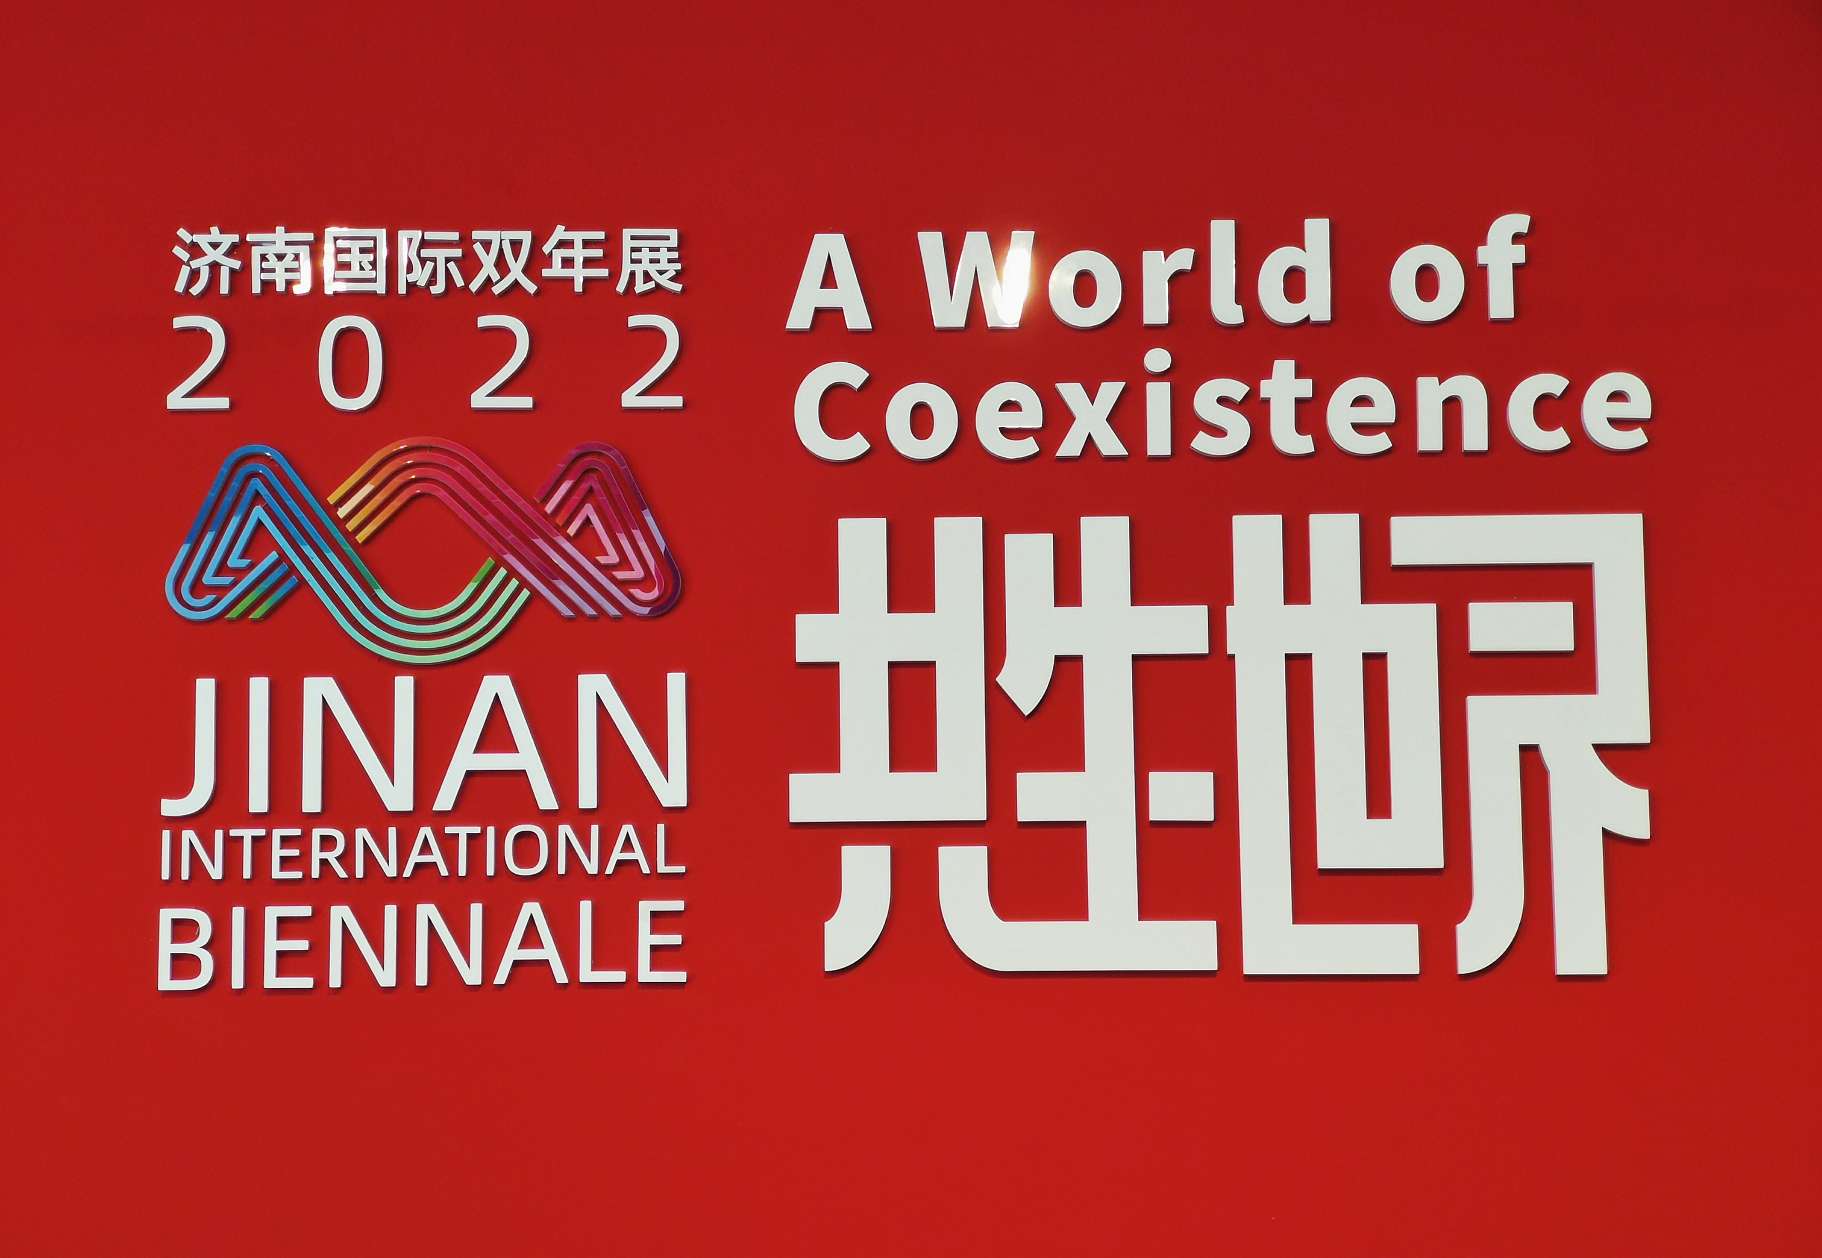 “共生世界——2022济南国际双年展”1月7日在山东美术馆和济南市美术馆同时开展